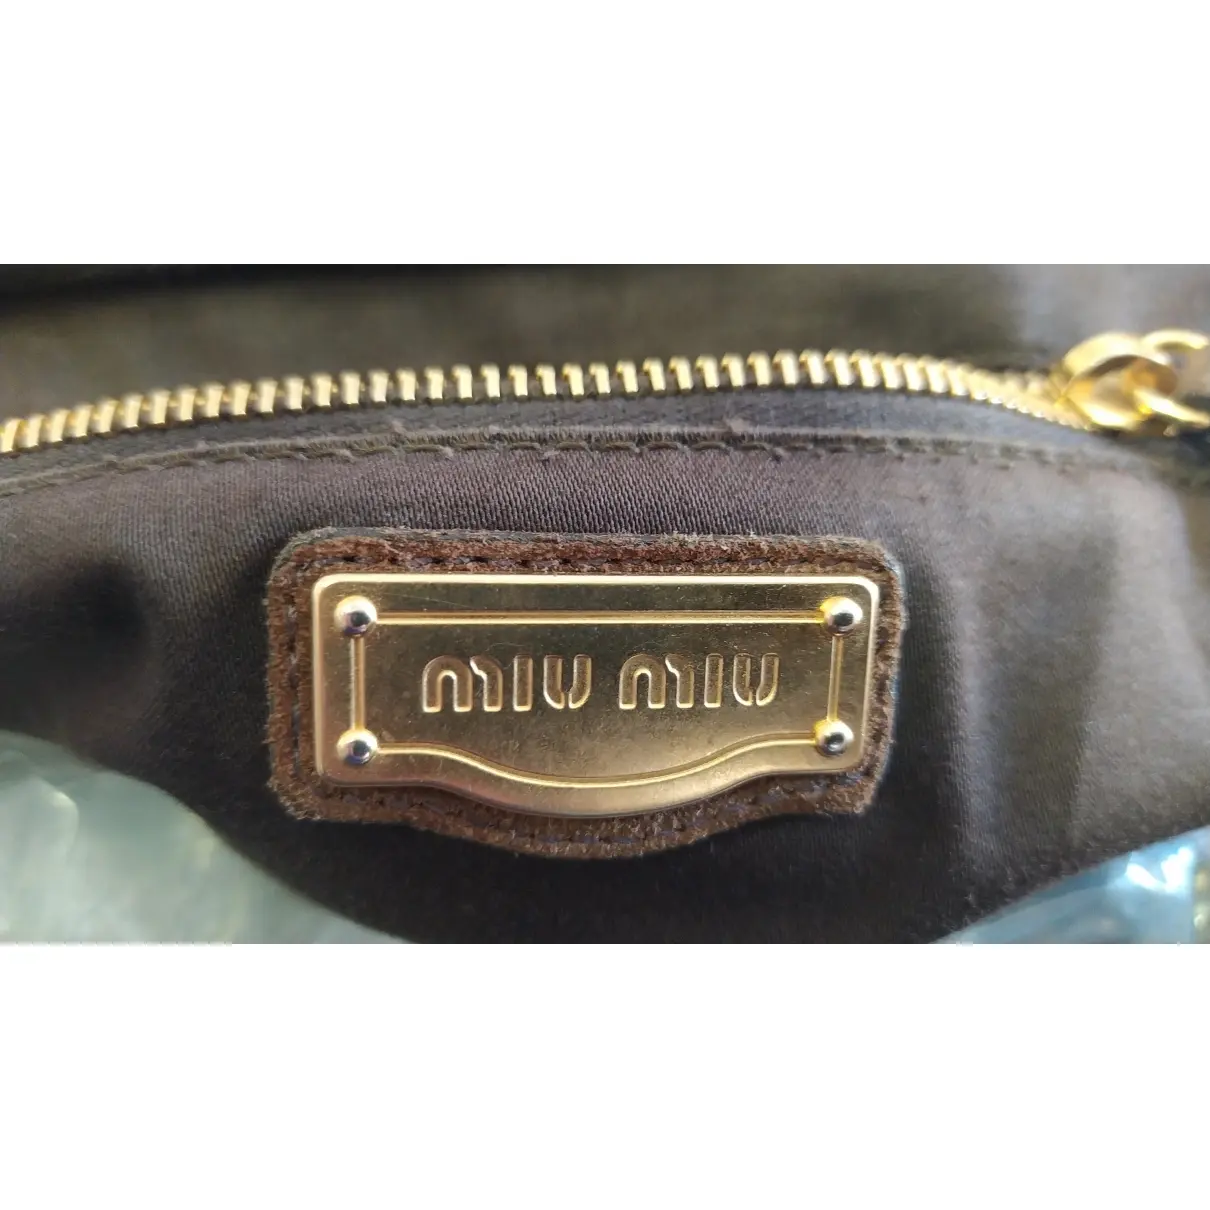 Handbag Miu Miu - Vintage